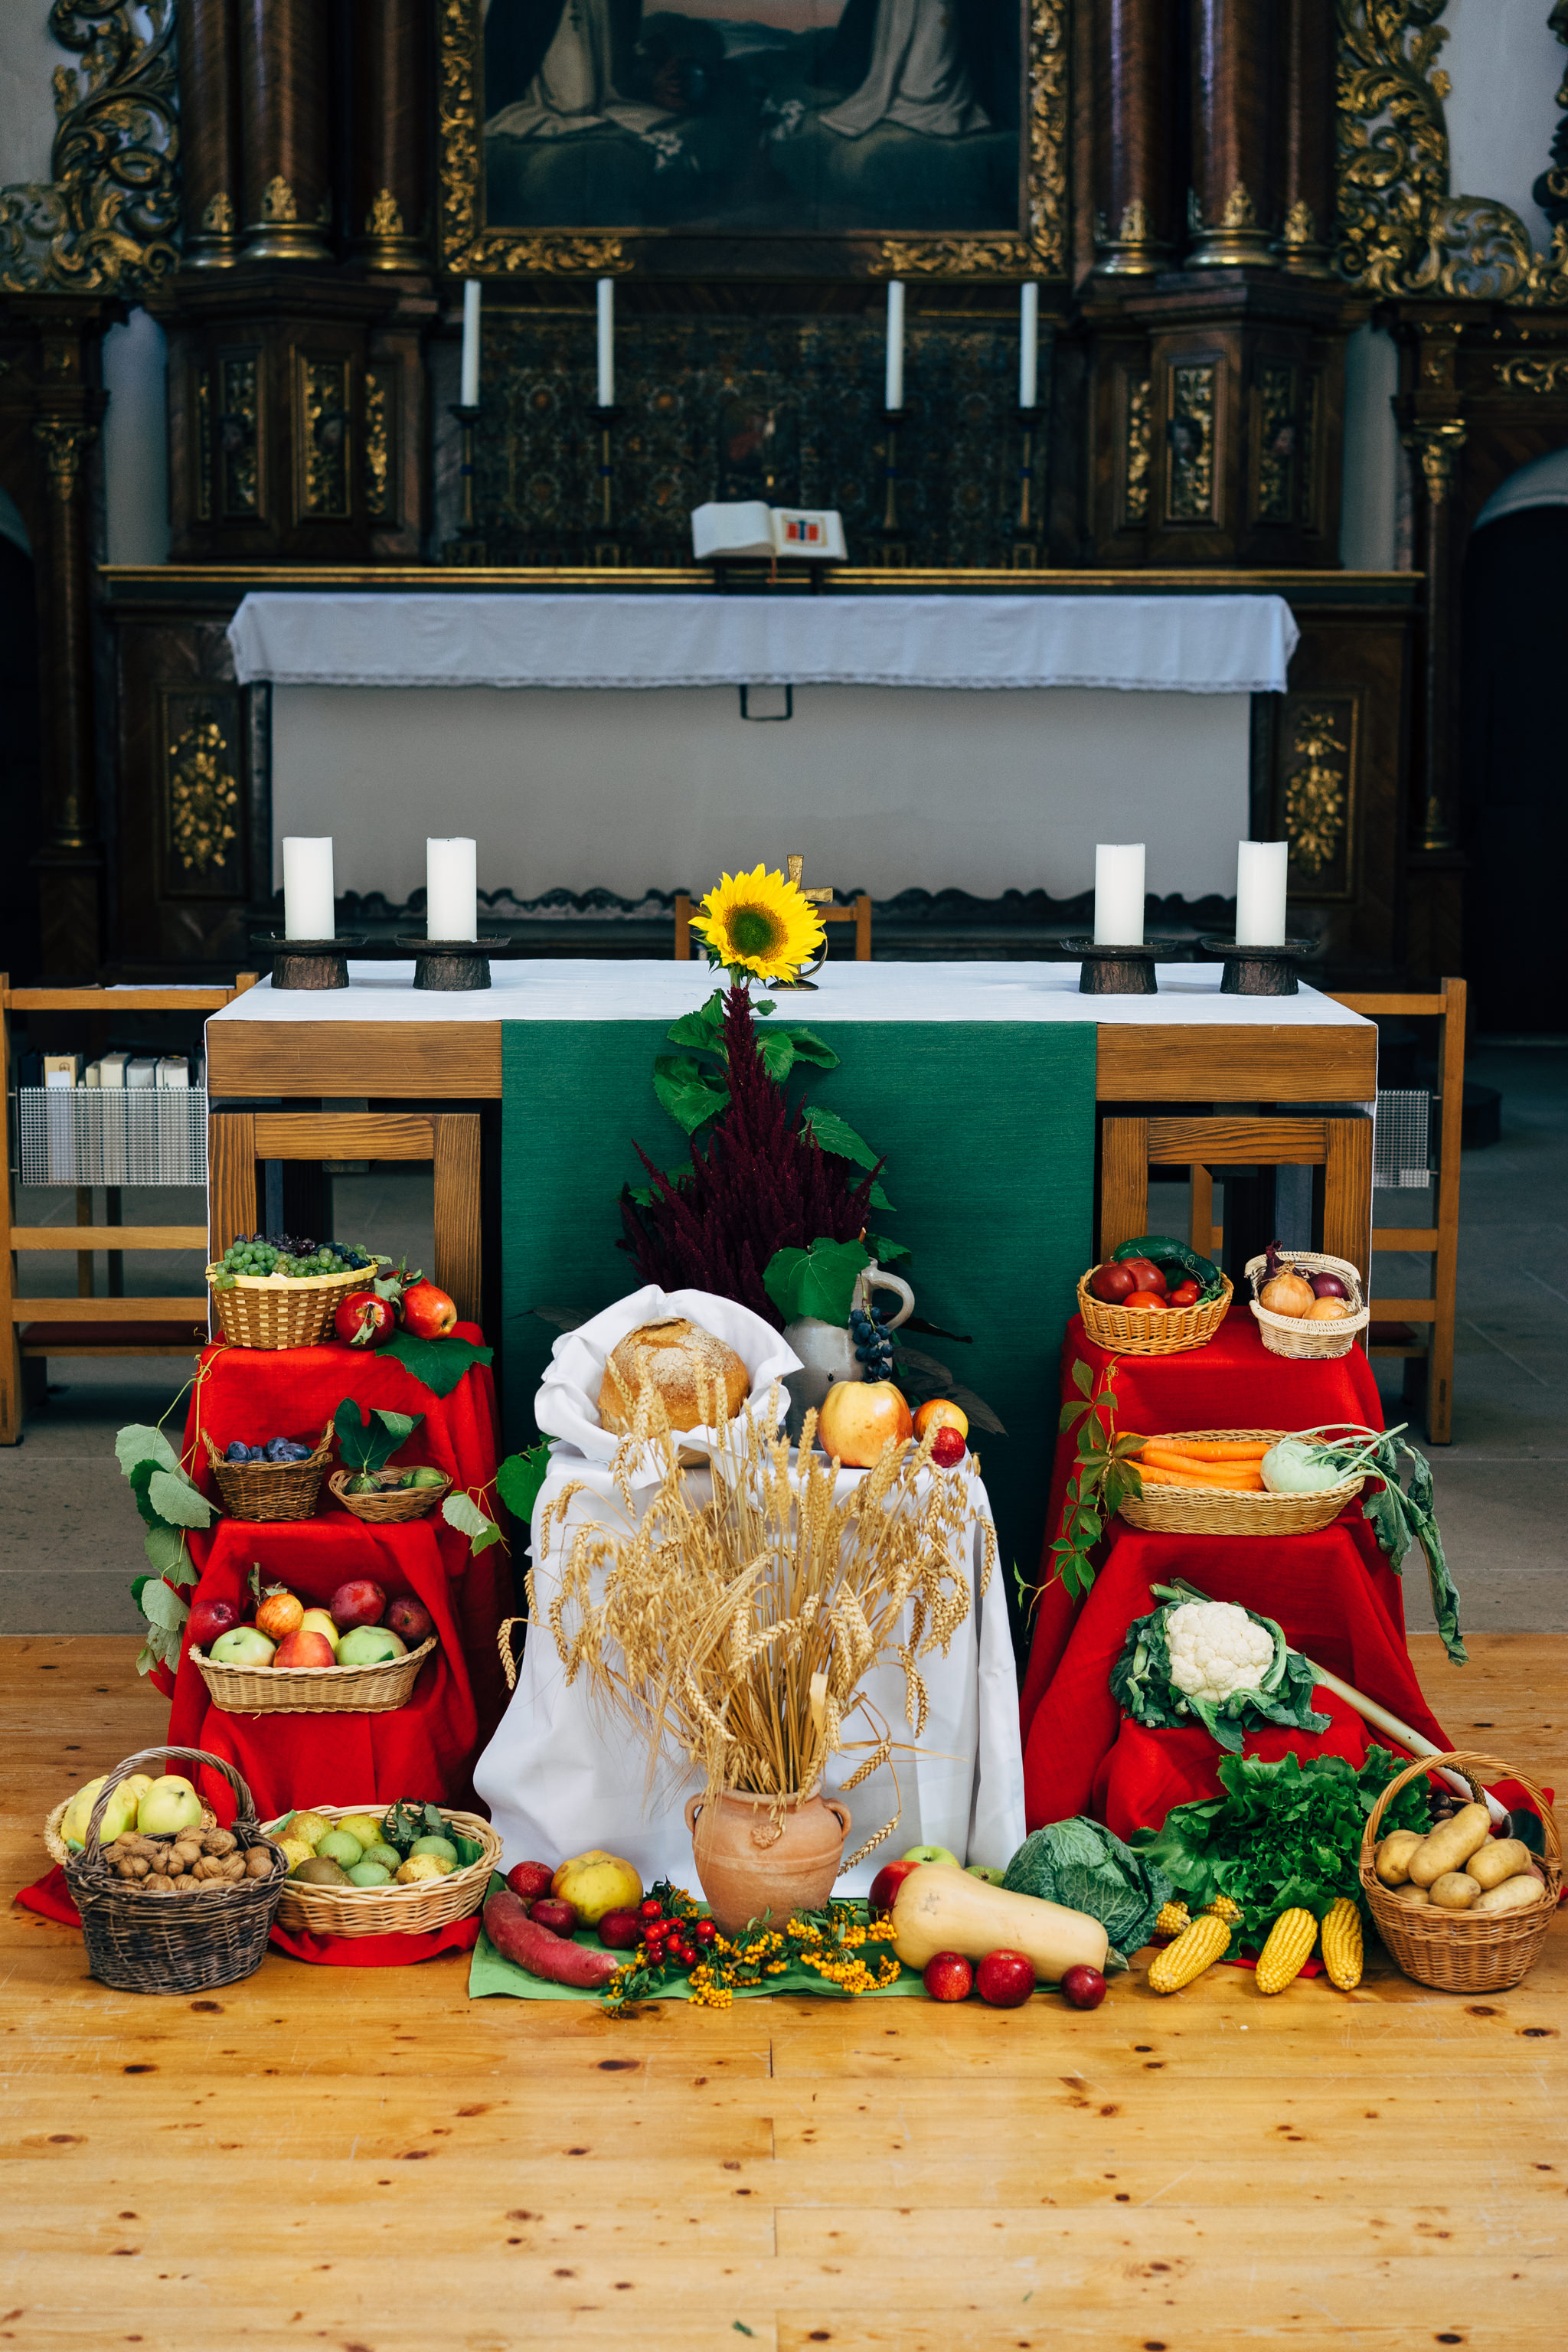 Celebrating the harvest festival in Germany • VIARAMI